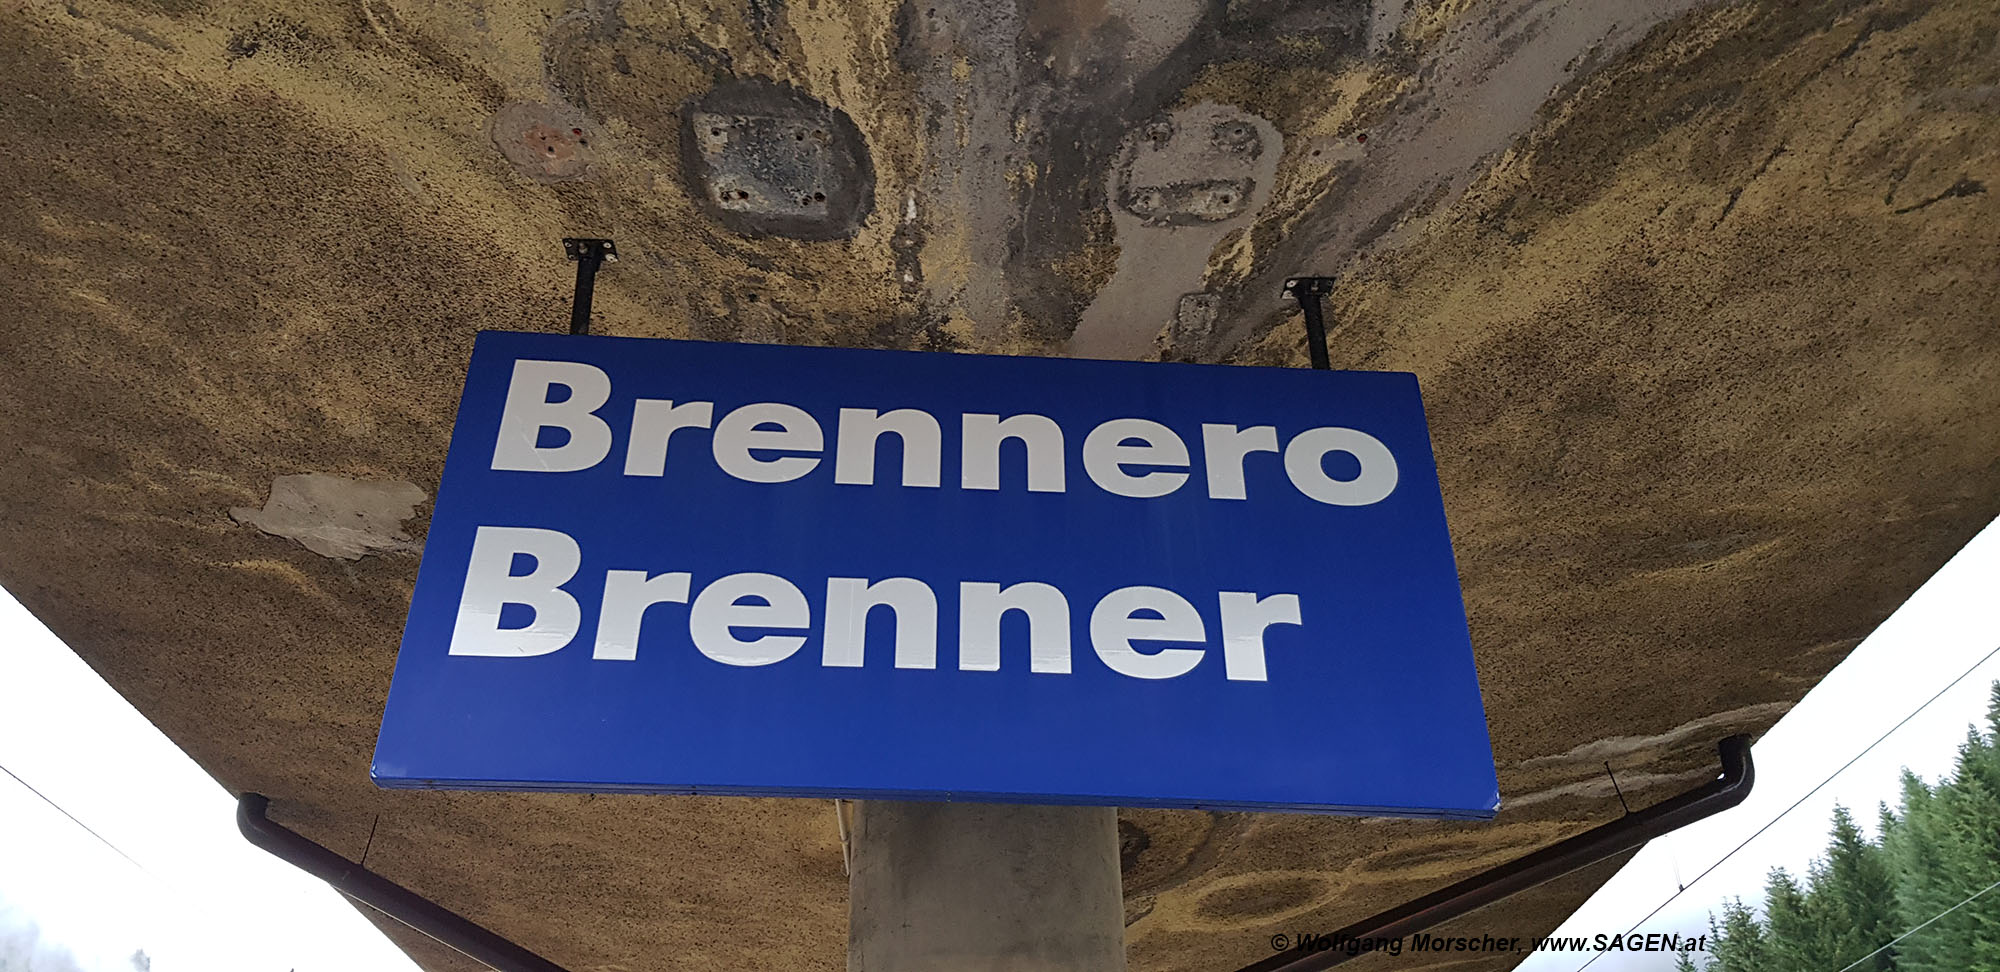 Bahnhof Brennero/Brenner